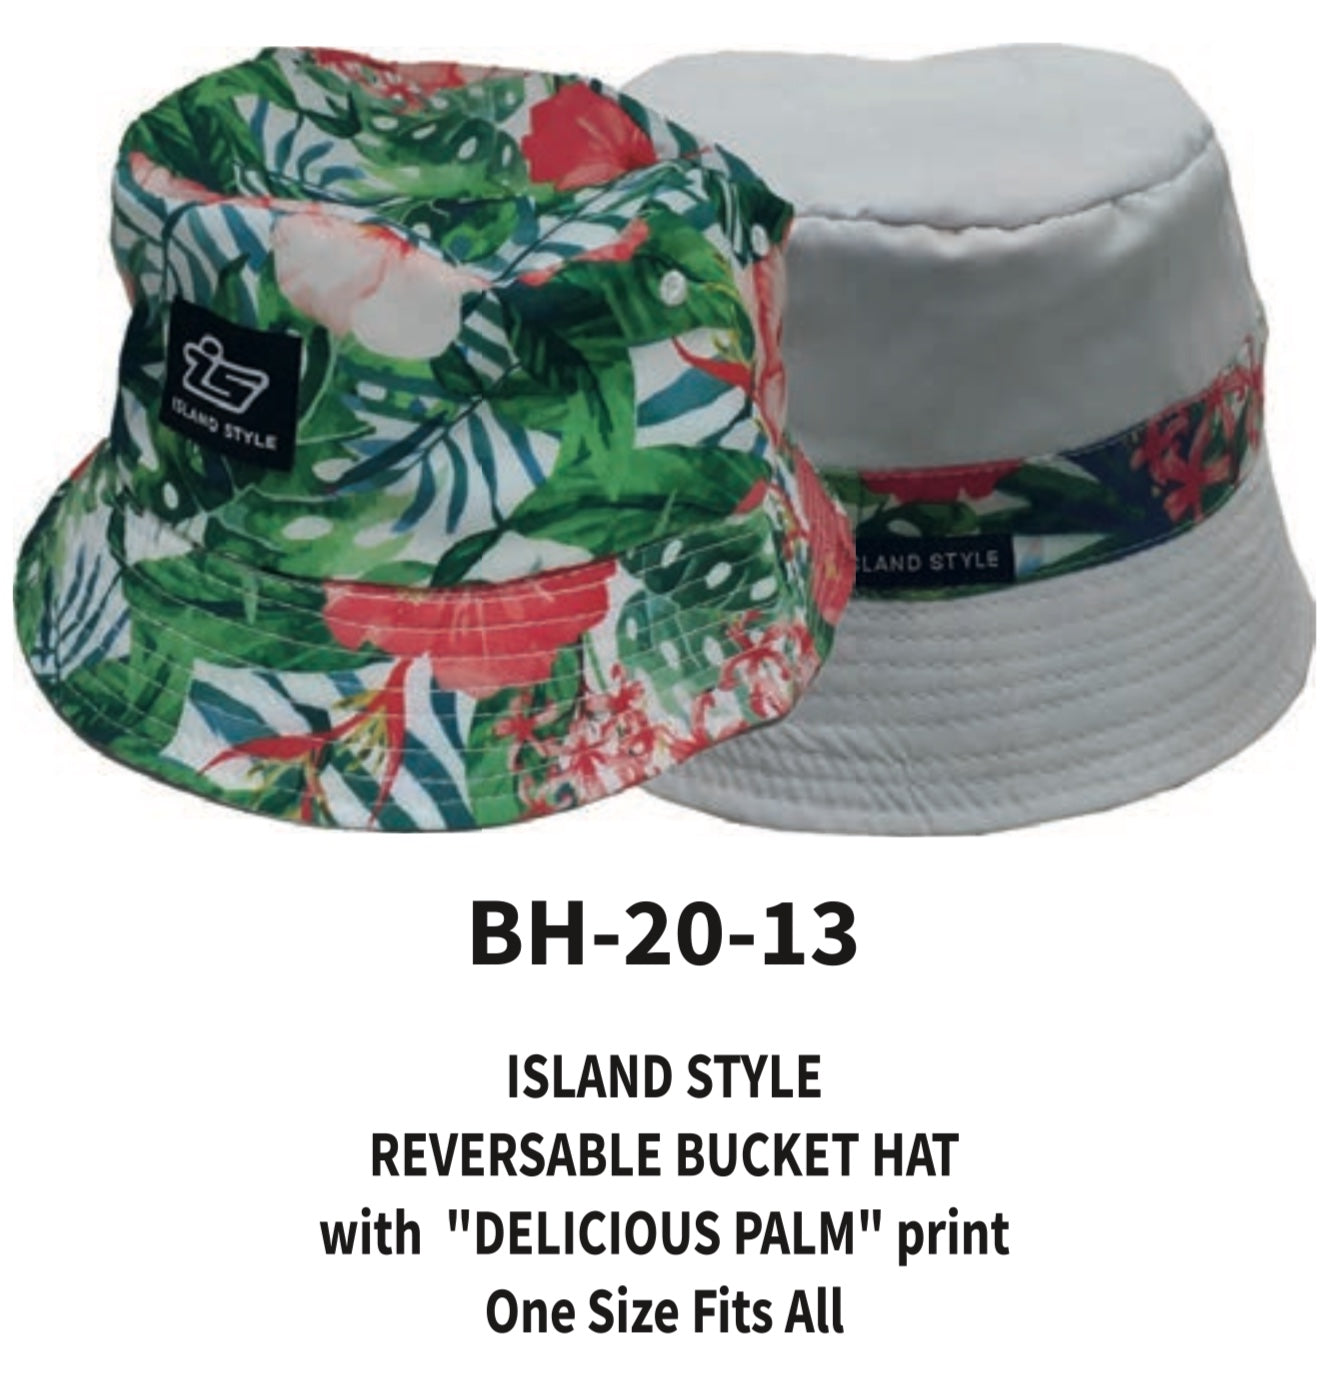 ISLAND STYLE REVERSABLE BUCKET HATS